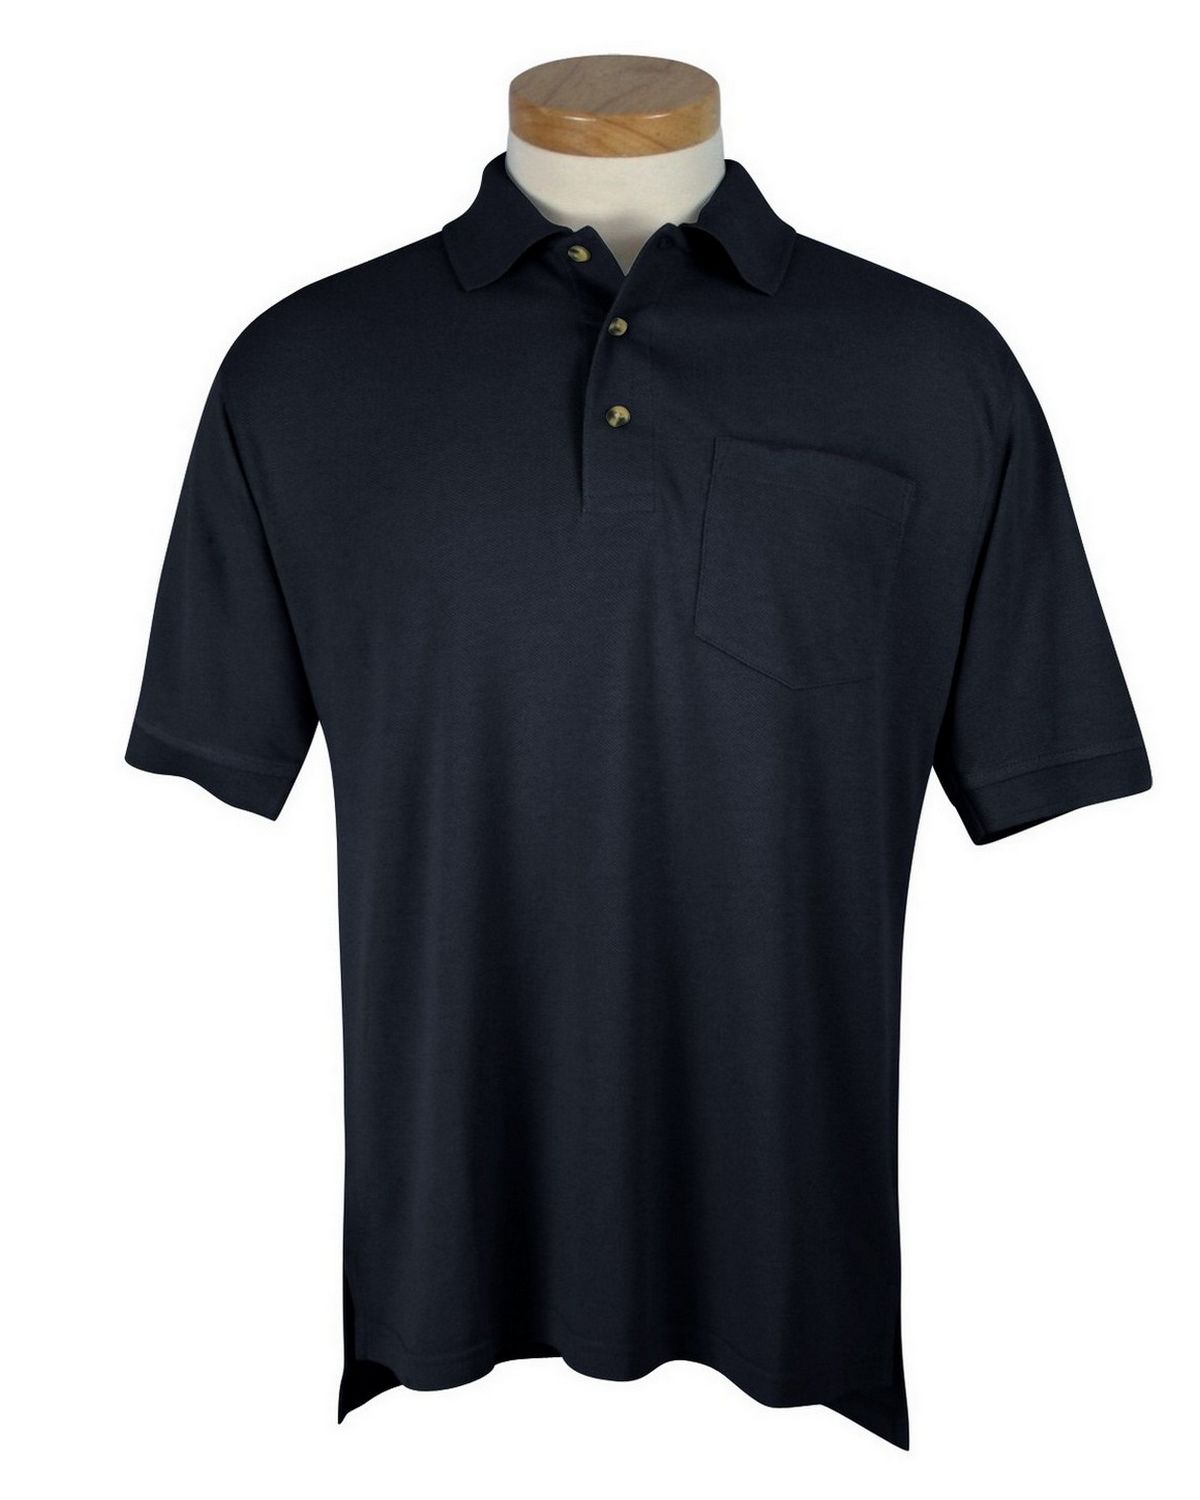 Tri-Mountain 106 Men's pique pocketed golf shirt - Apparelnbags.com